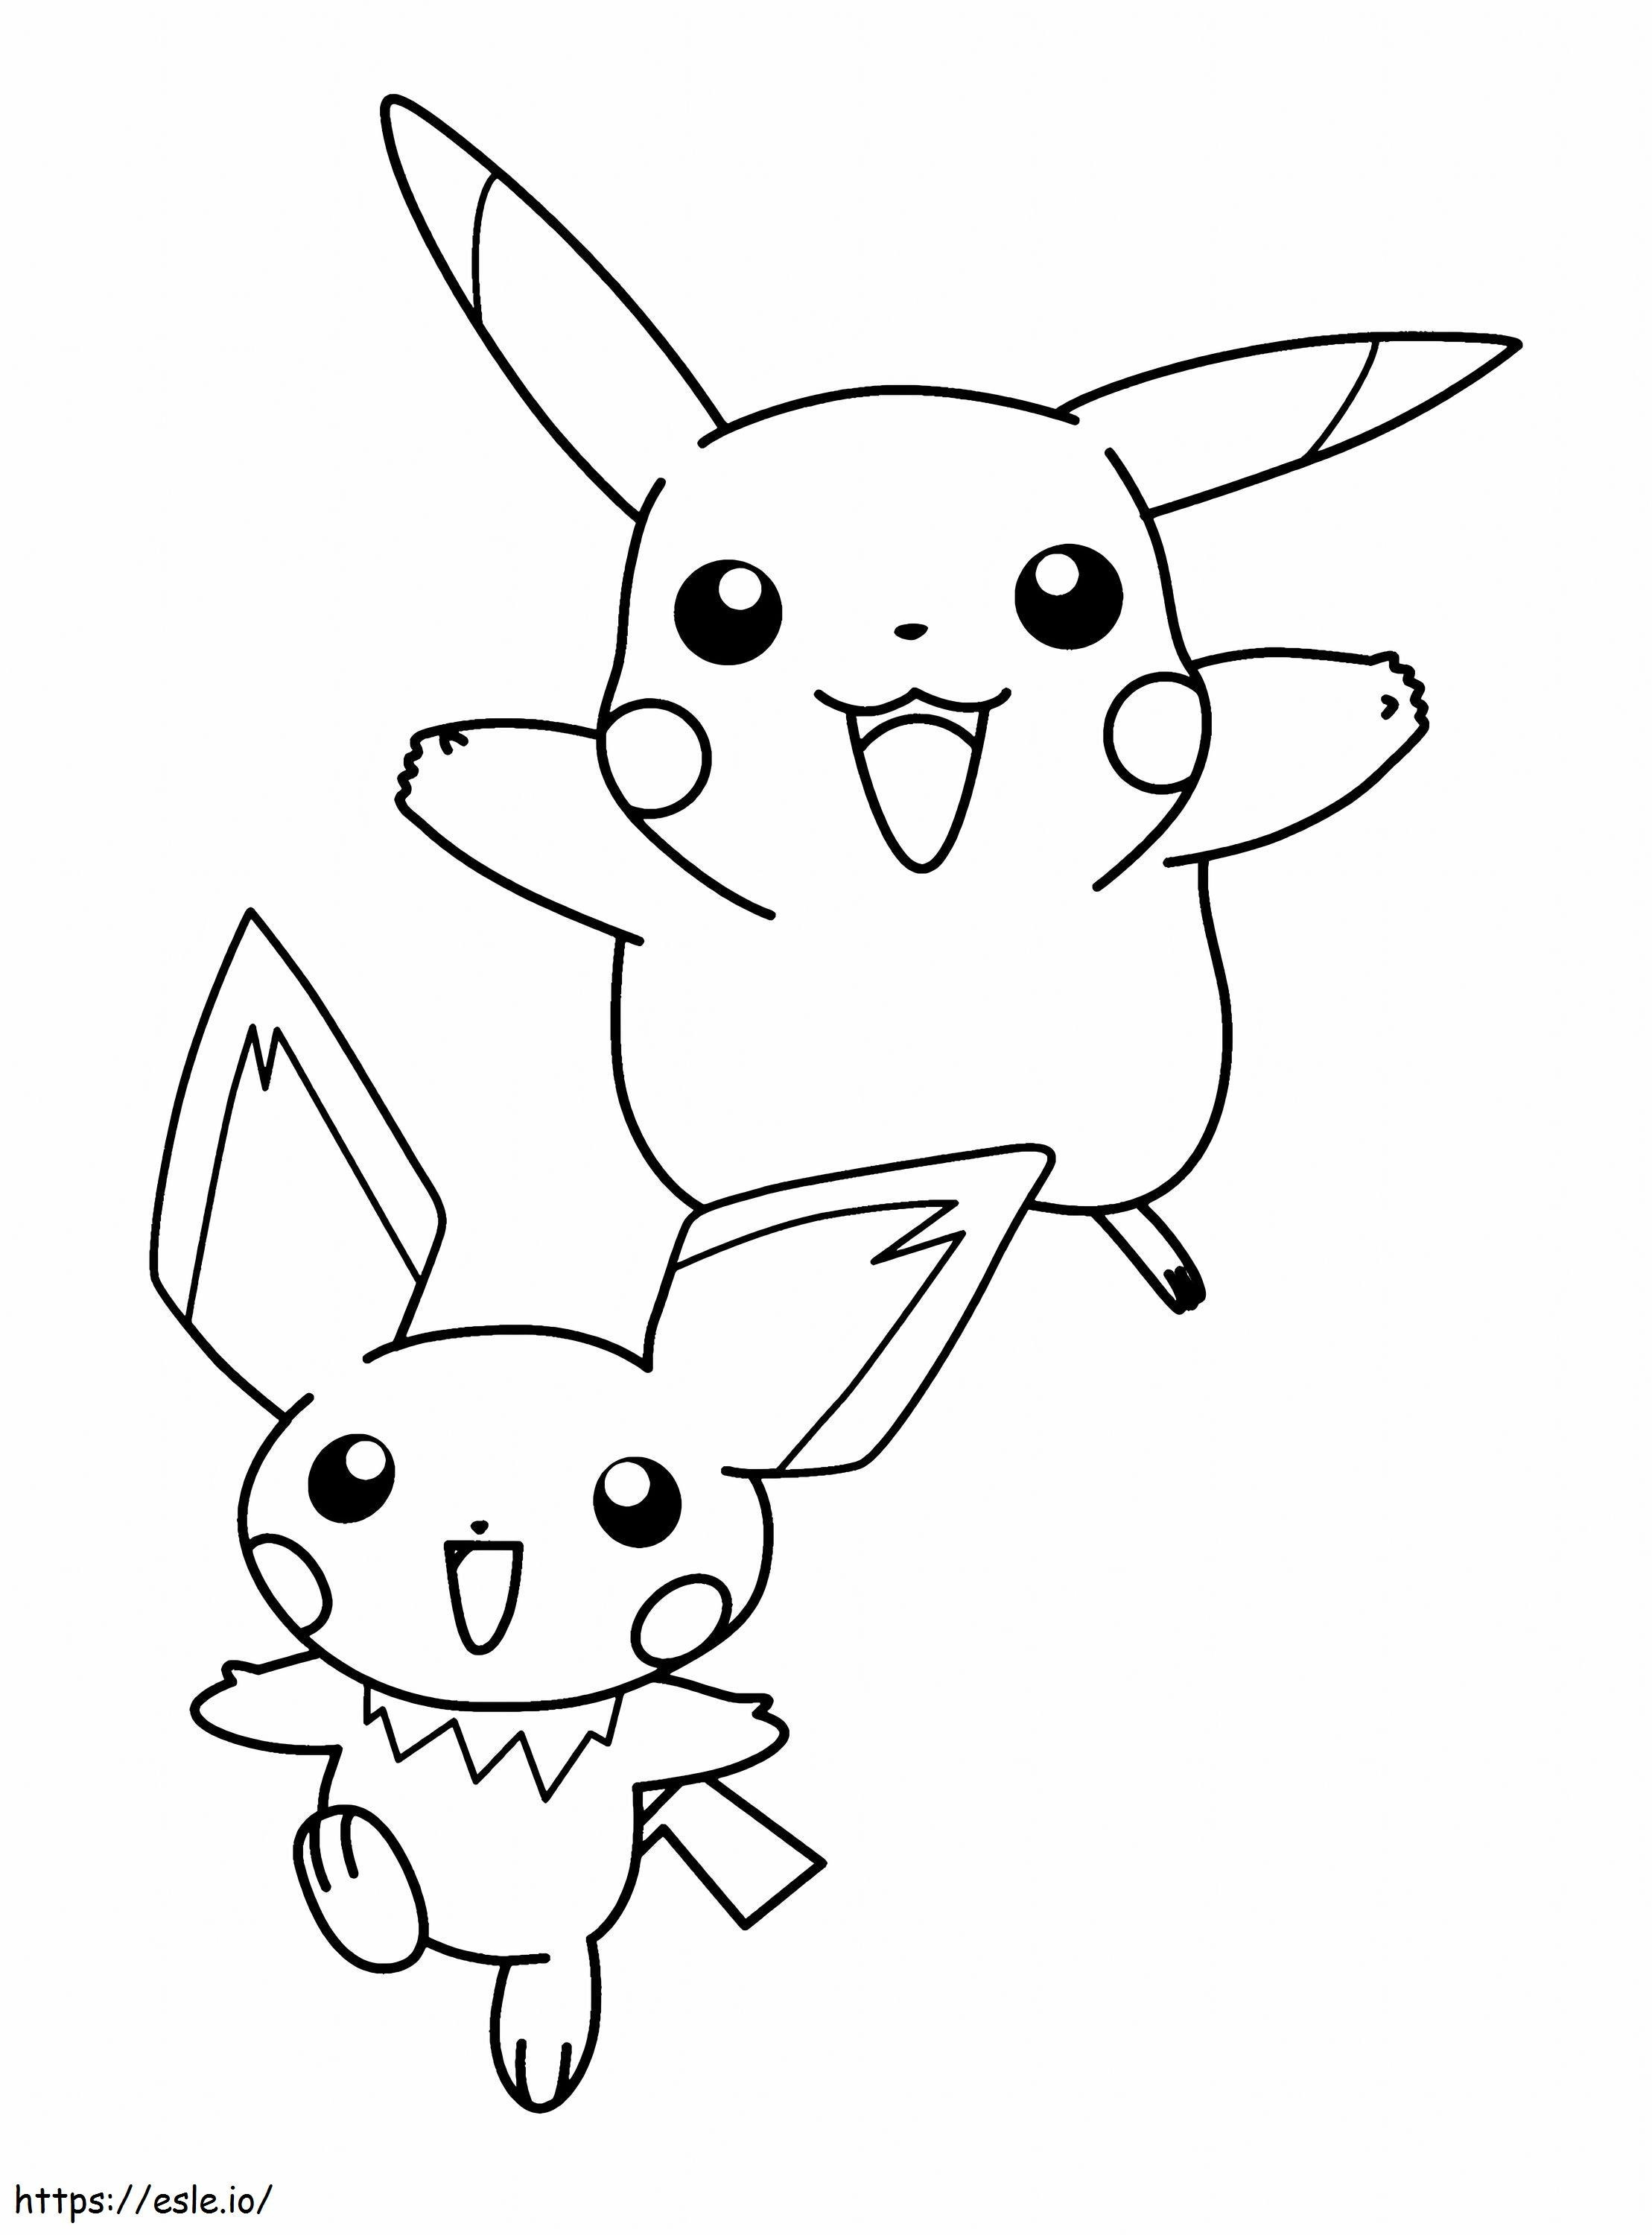 Pikachu y Pichu para colorear